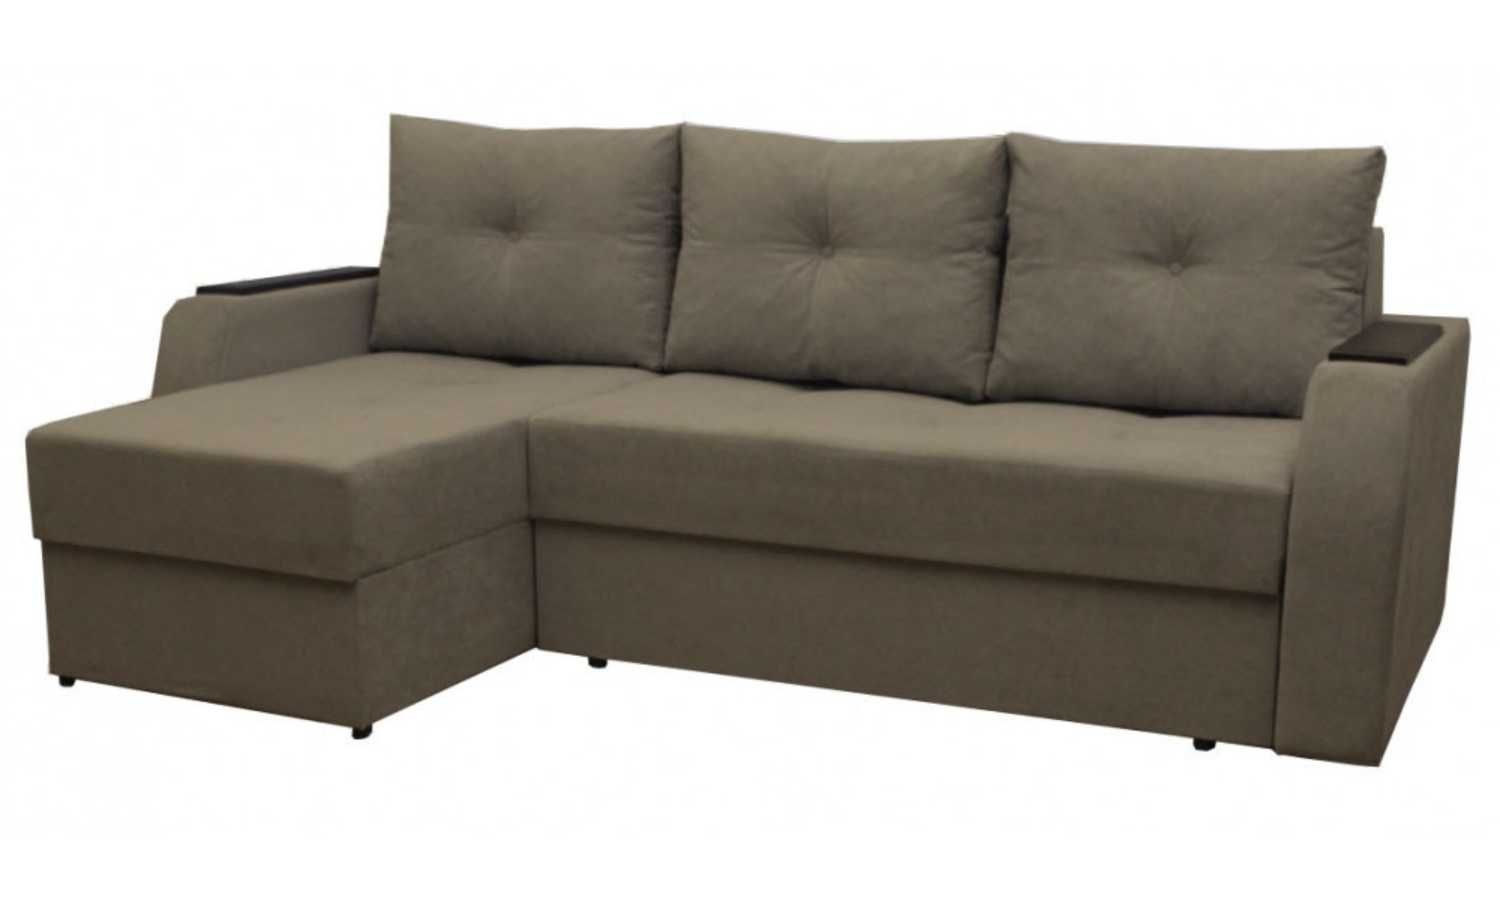 Угловой диван Барселона - высокое качество по хорошей цене АКЦИЯ!!!